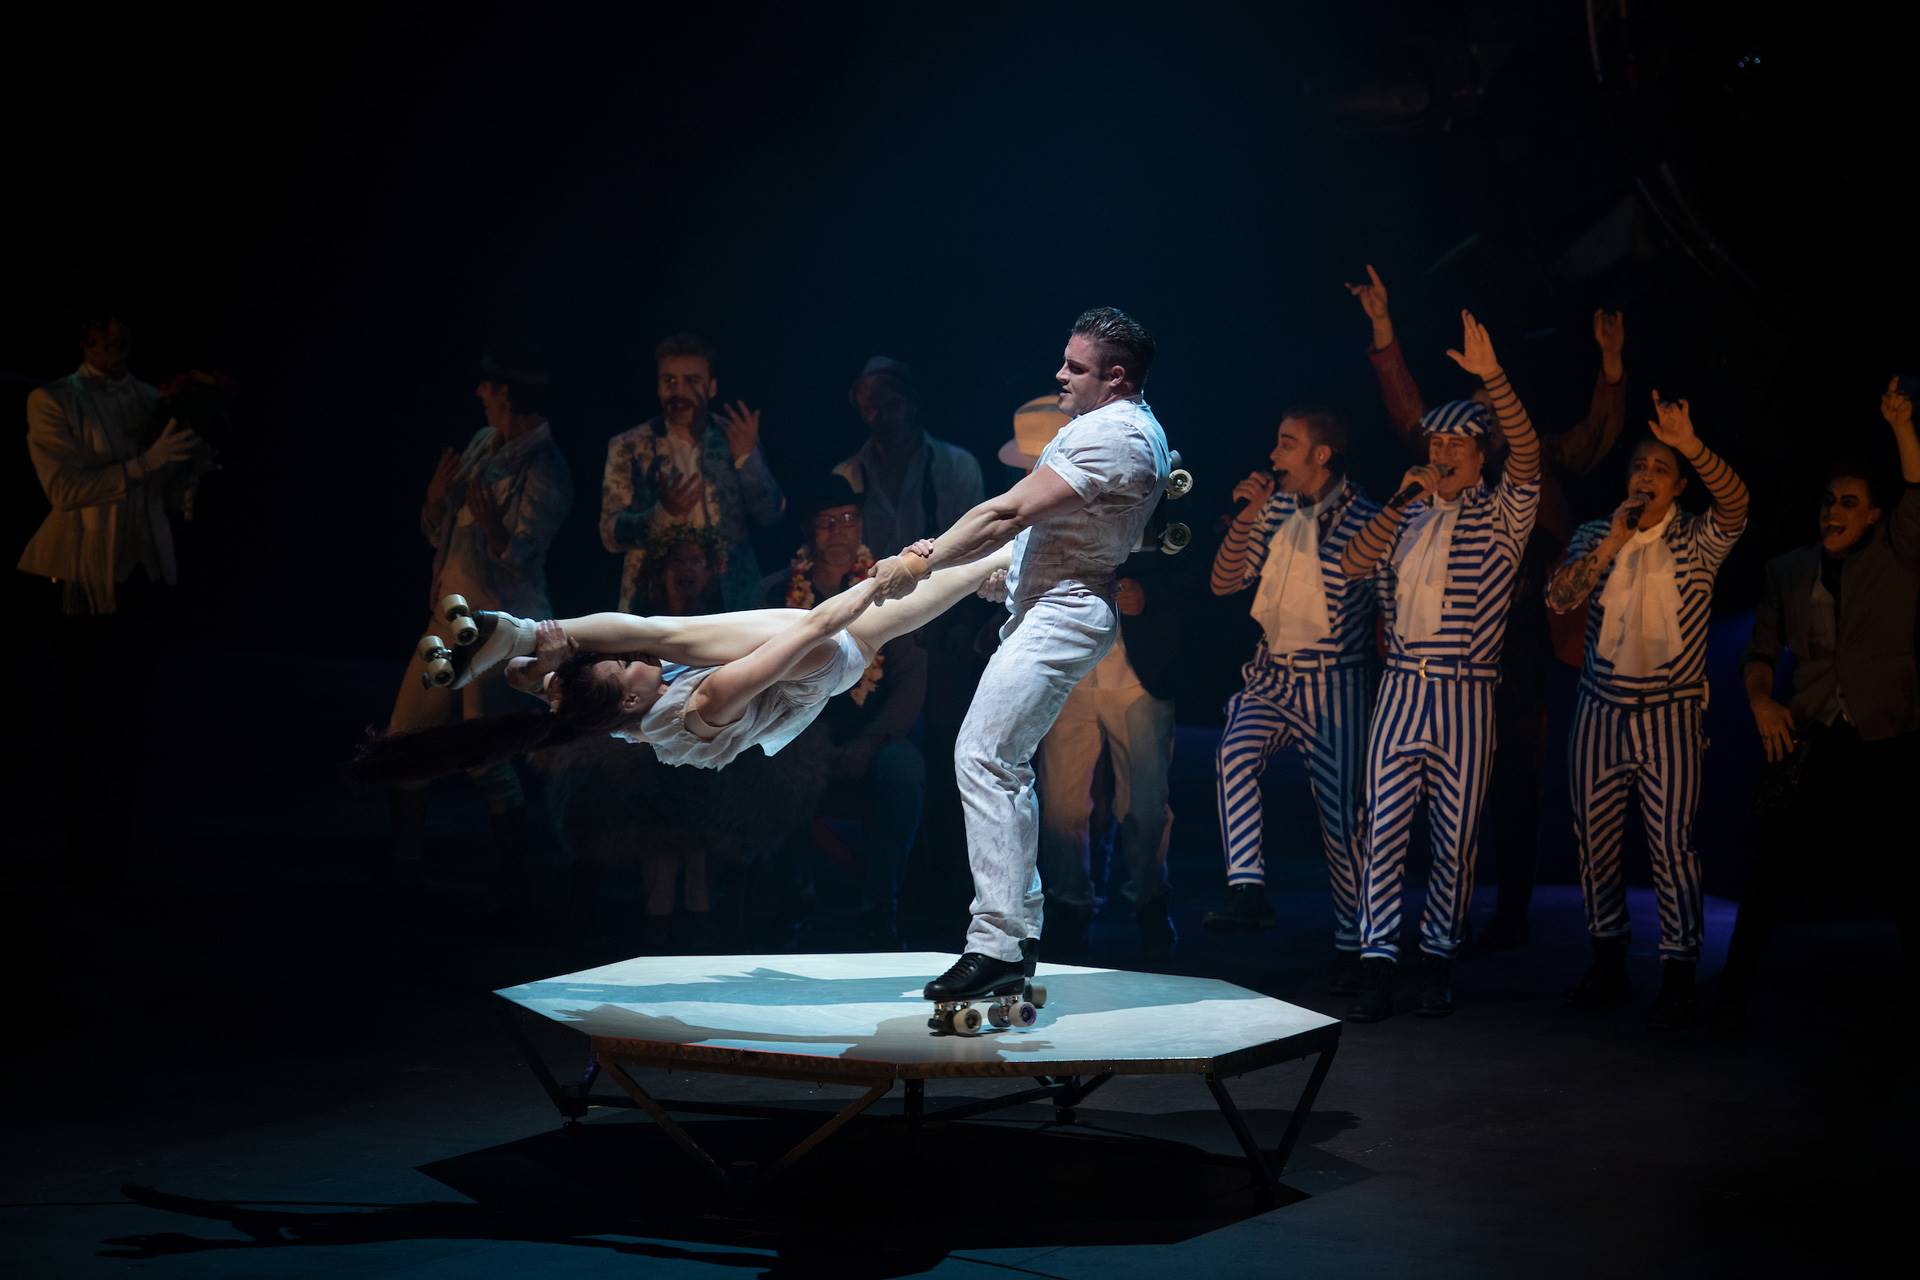 Rebel by Cirque du Soleil 2019: Pairs' skating stunts